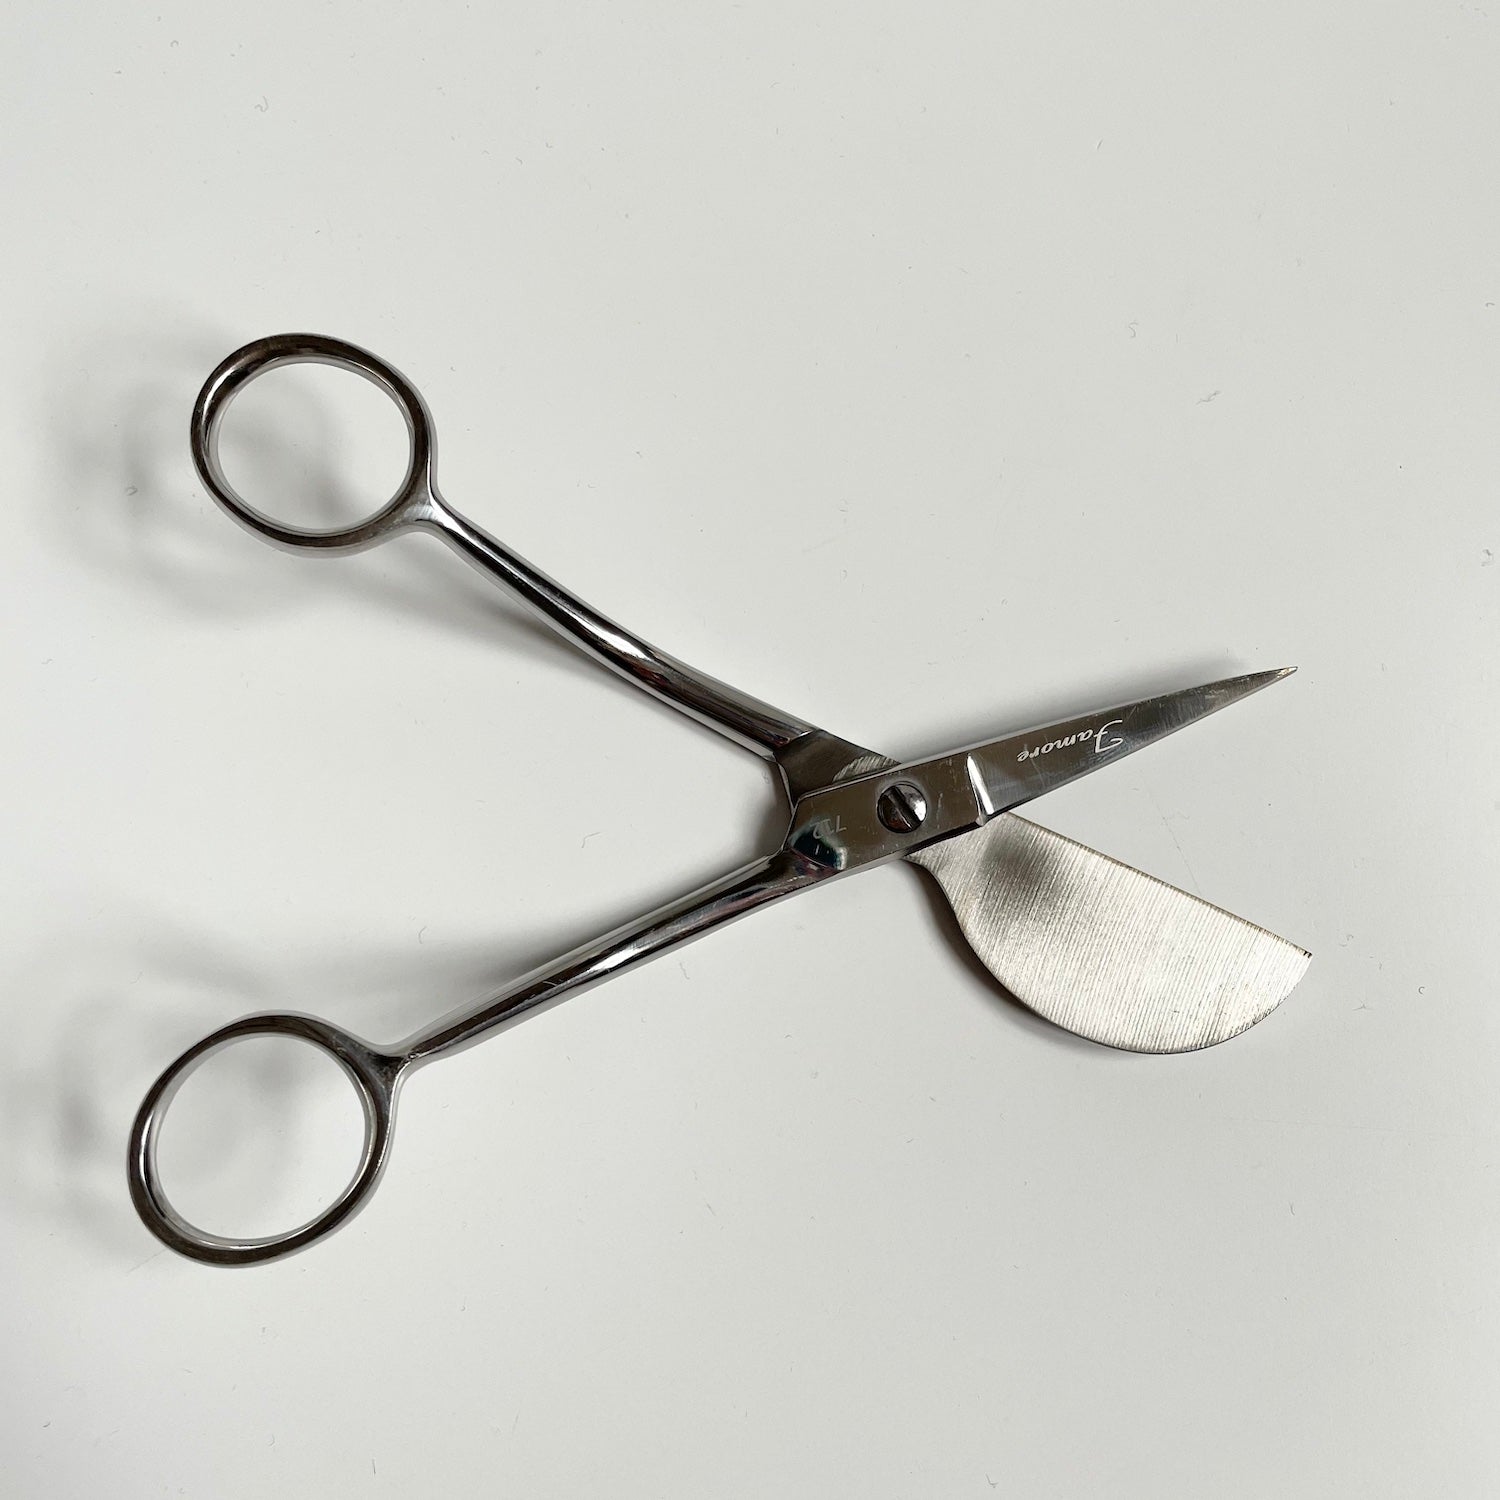 Famore Duckbill Applique Scissors - 6